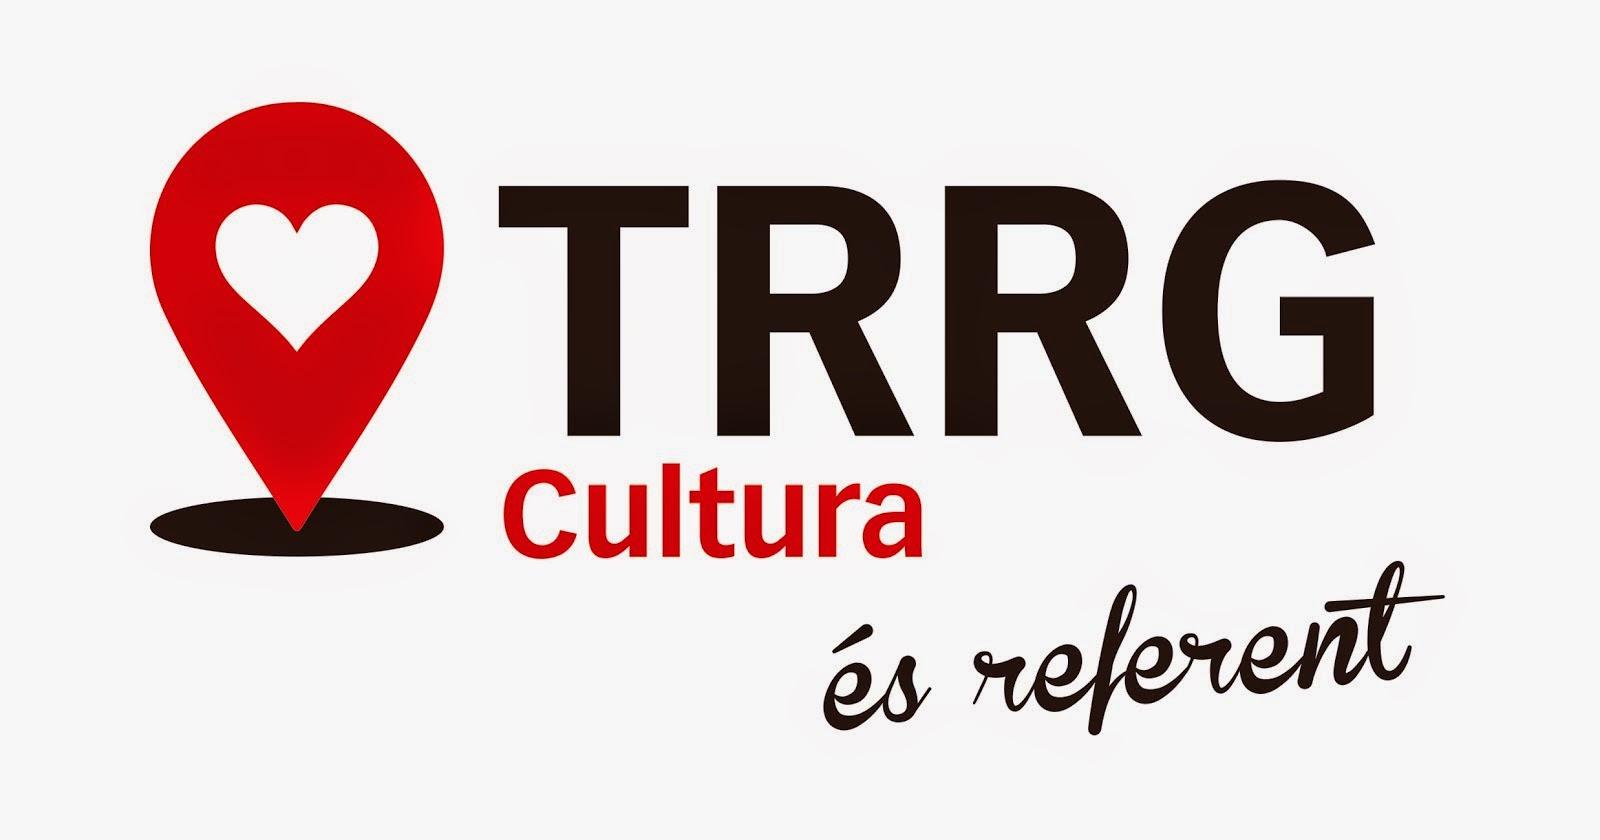 TRRG Cultura és referent